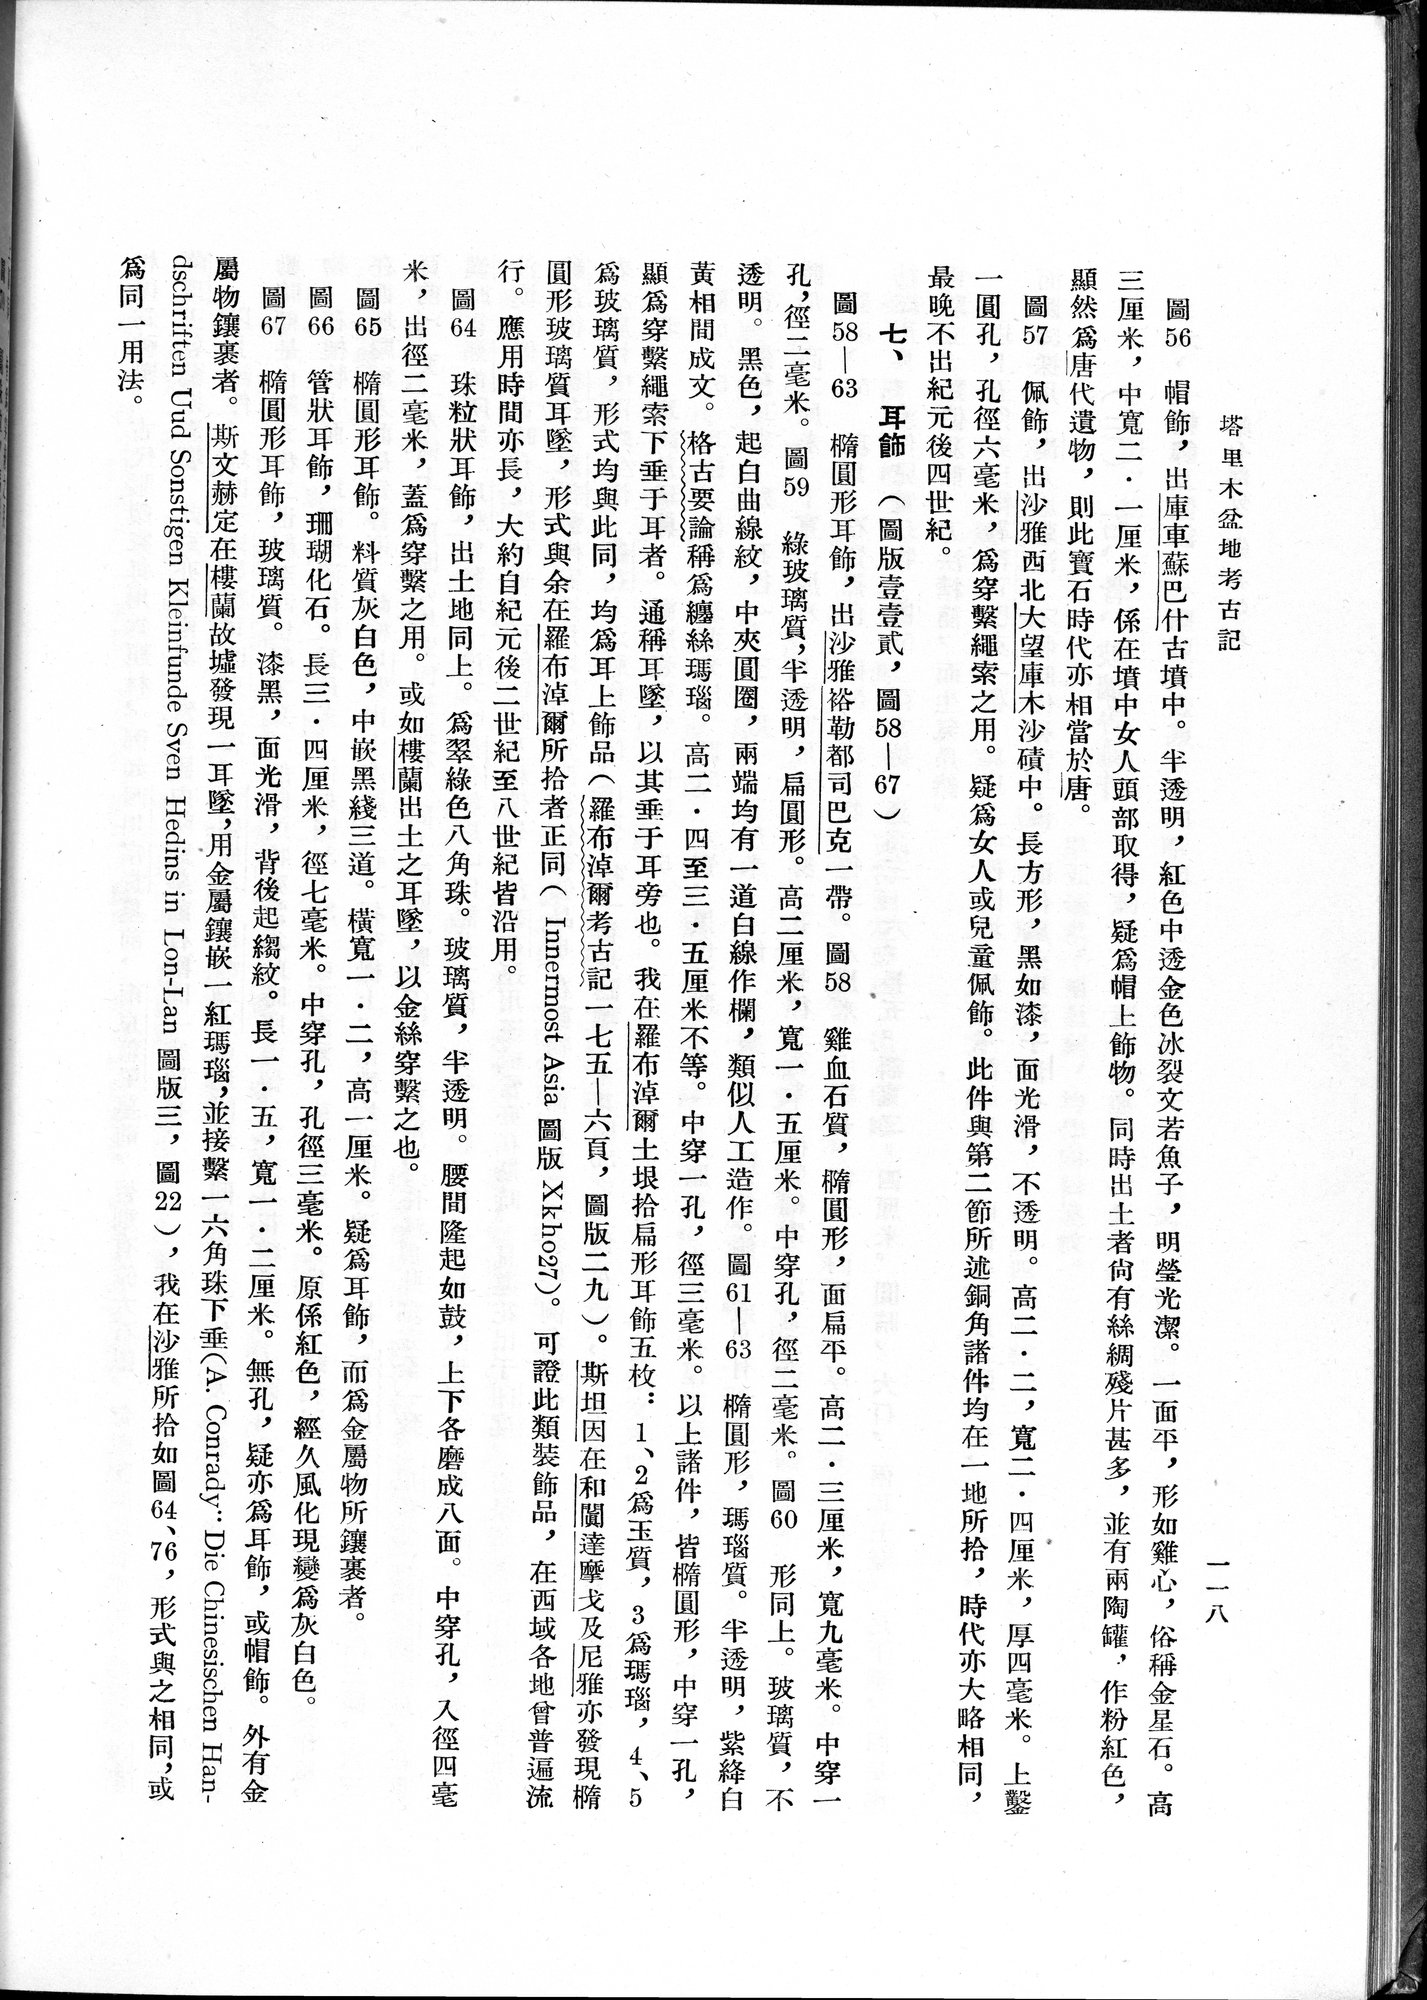 塔里木盆地考古記 : vol.1 / Page 182 (Grayscale High Resolution Image)